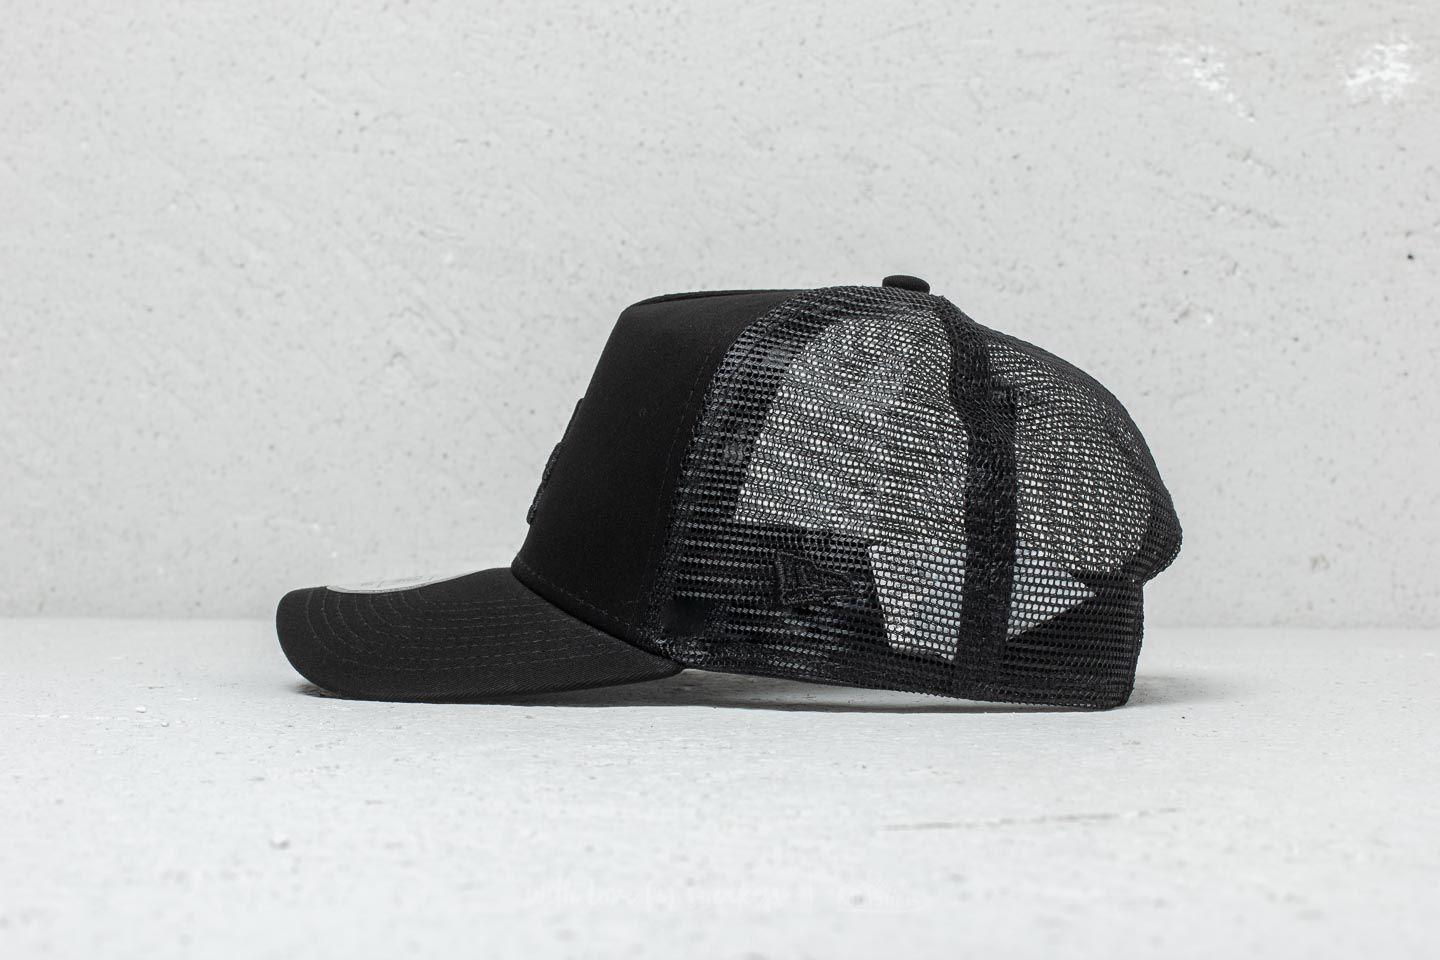 KTZ 9forty La Dodgers Essential Hat in Black for Men